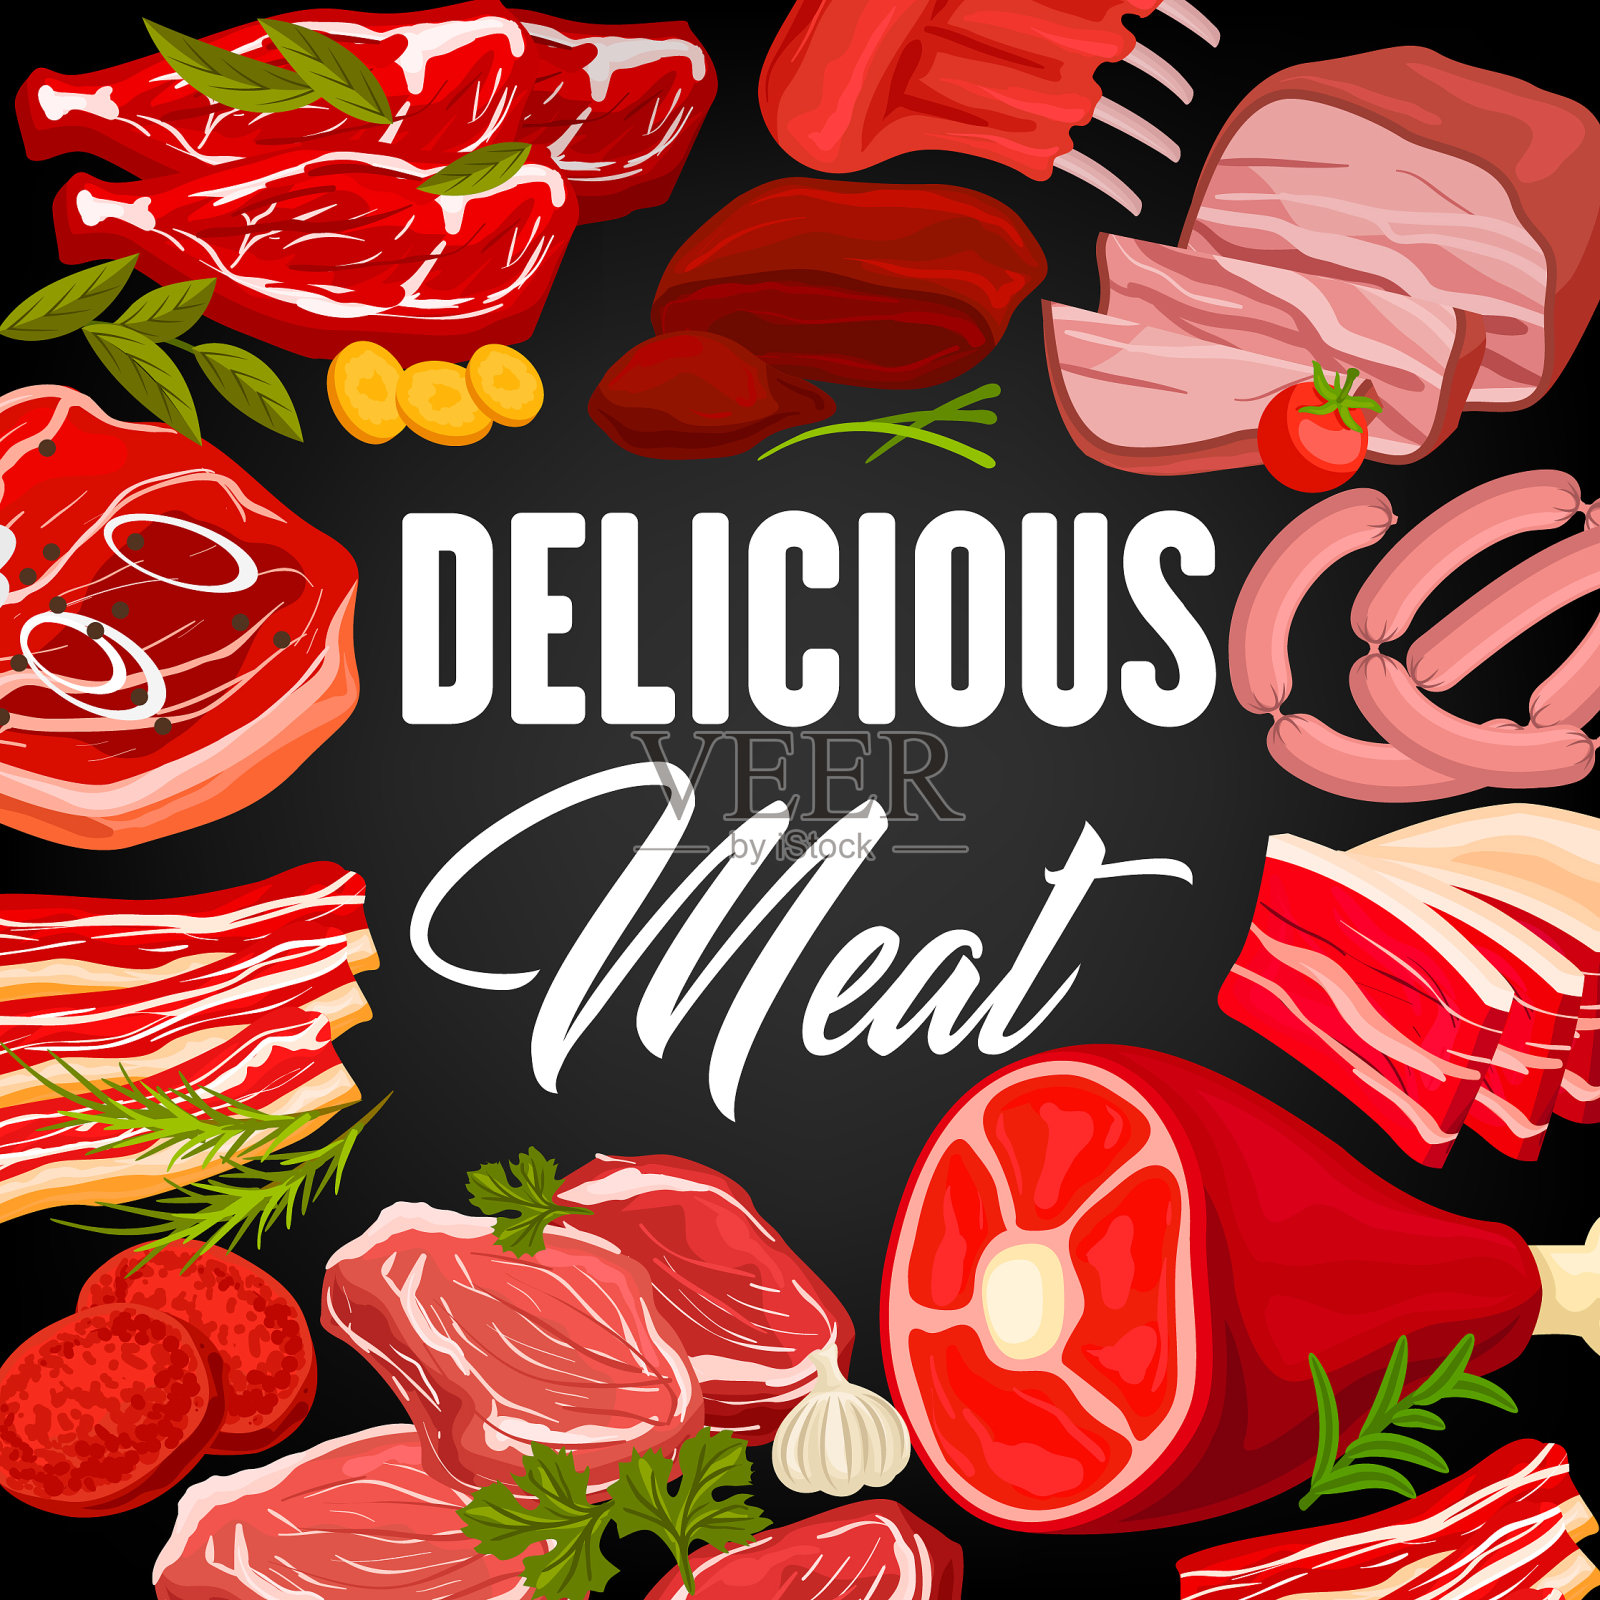 肉制品及香肠店海报设计模板素材